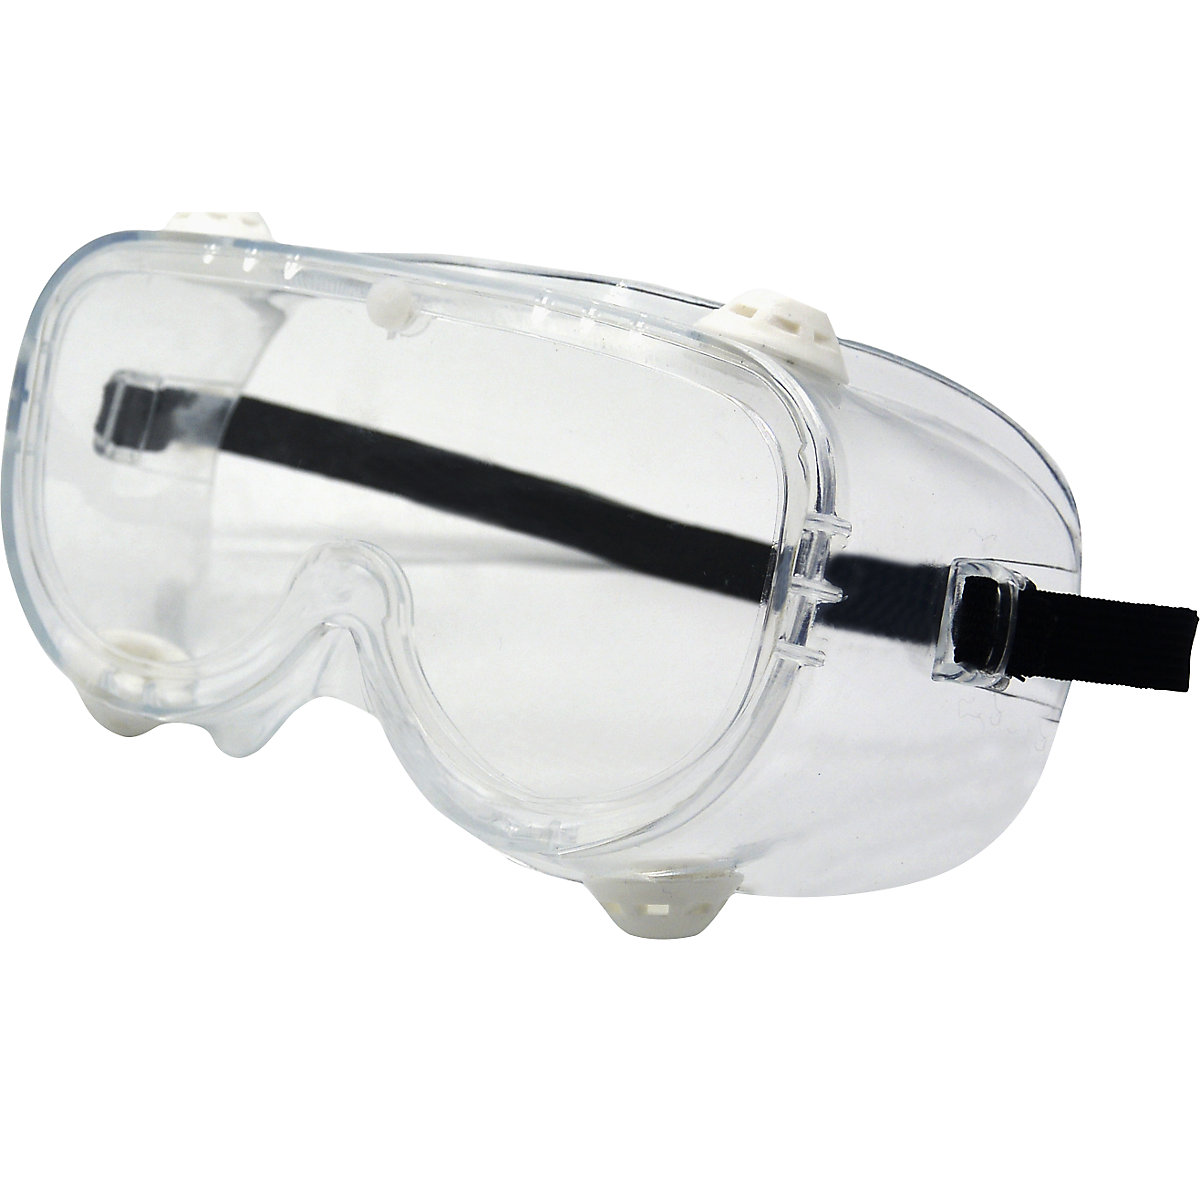 Panoramatické ochranné brýle podle EN 166 (bal.j. 10 nebo 200 ks)